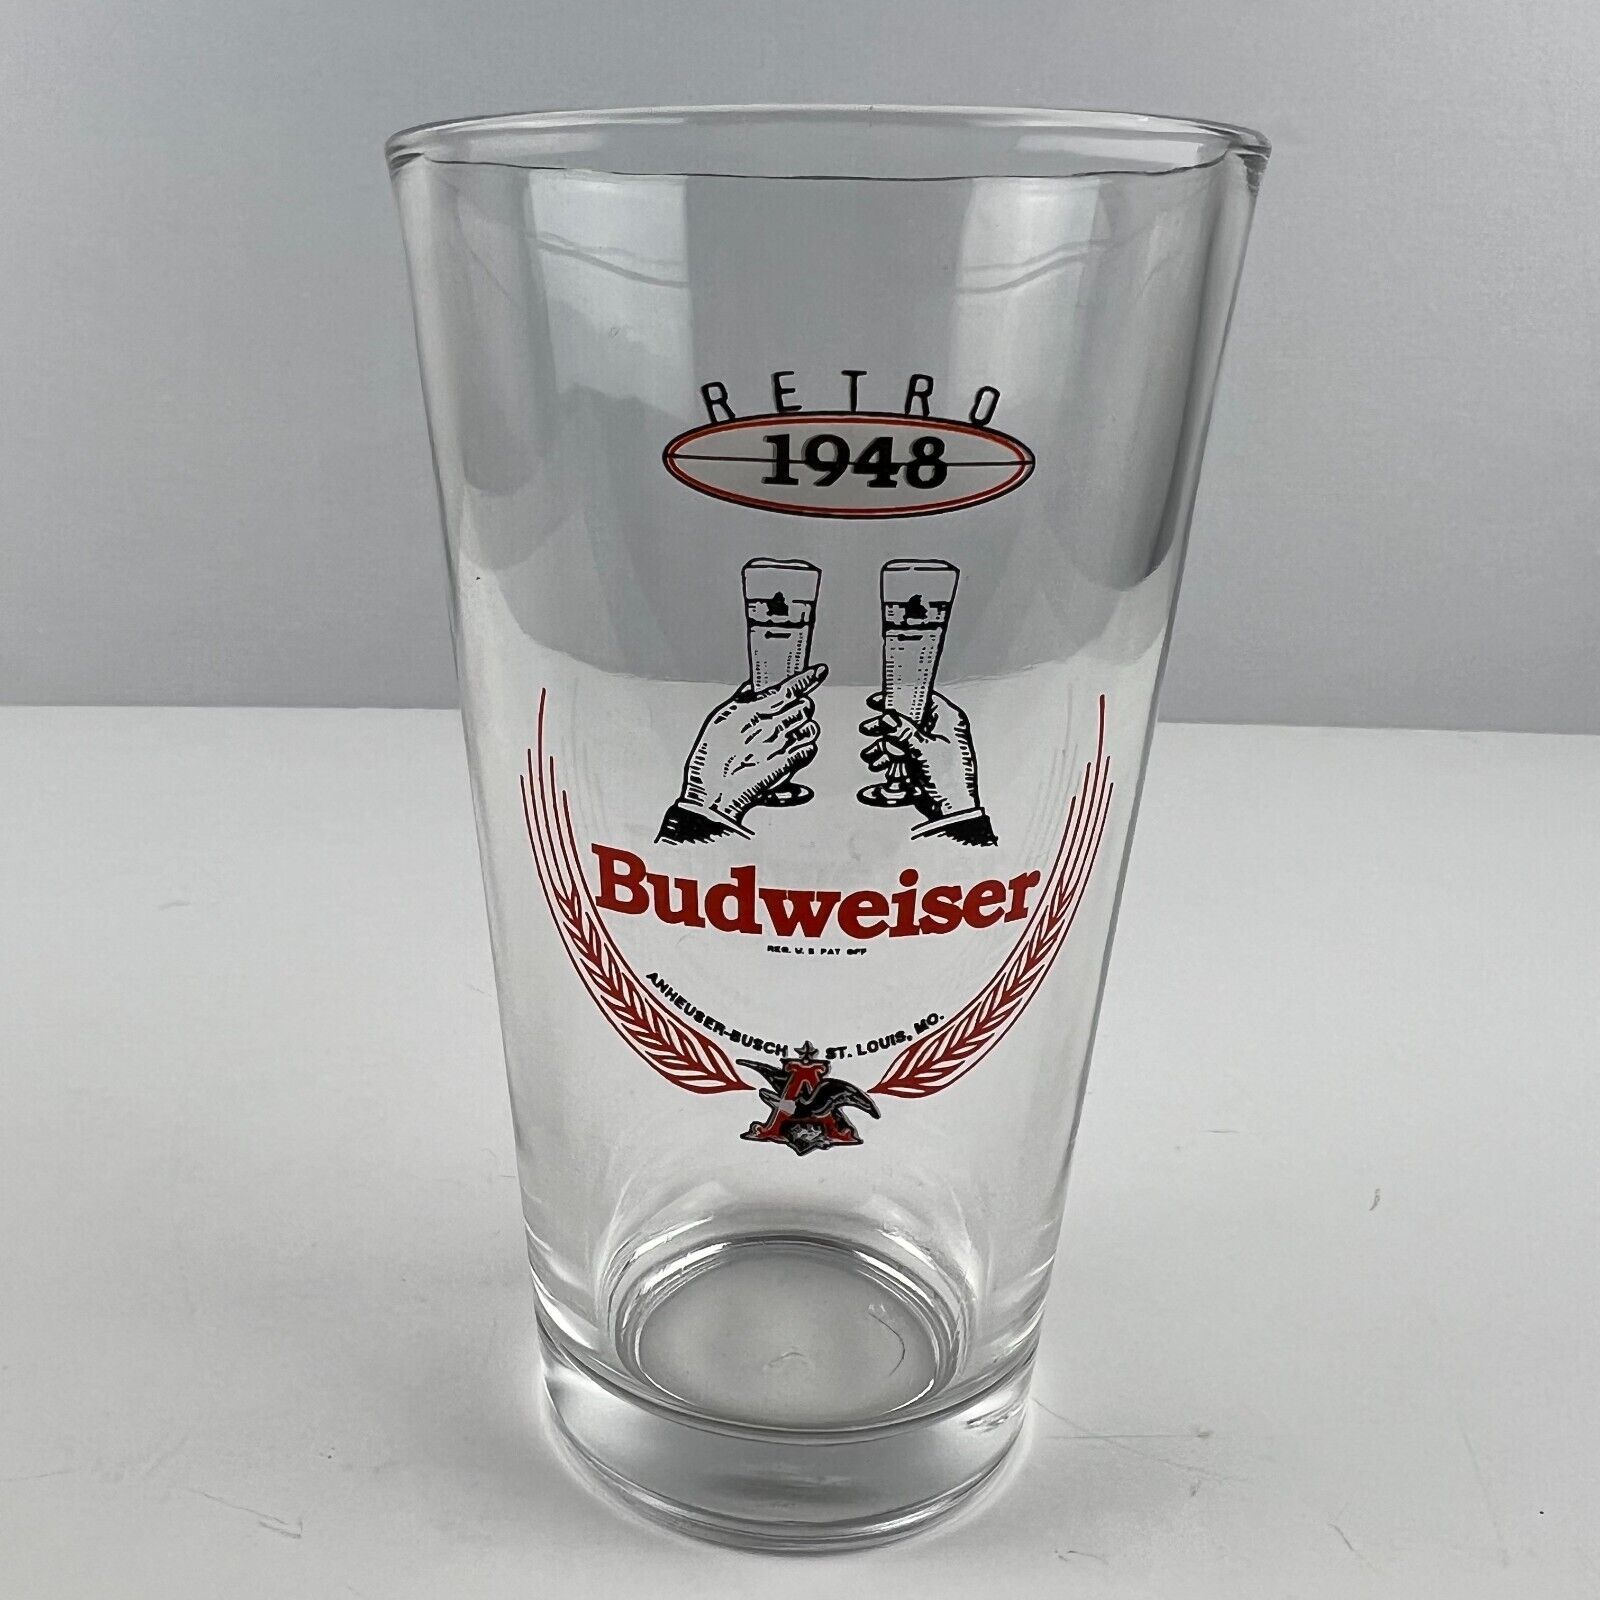 Budweiser Retro 1948 Pint Beer Glass - $9.89